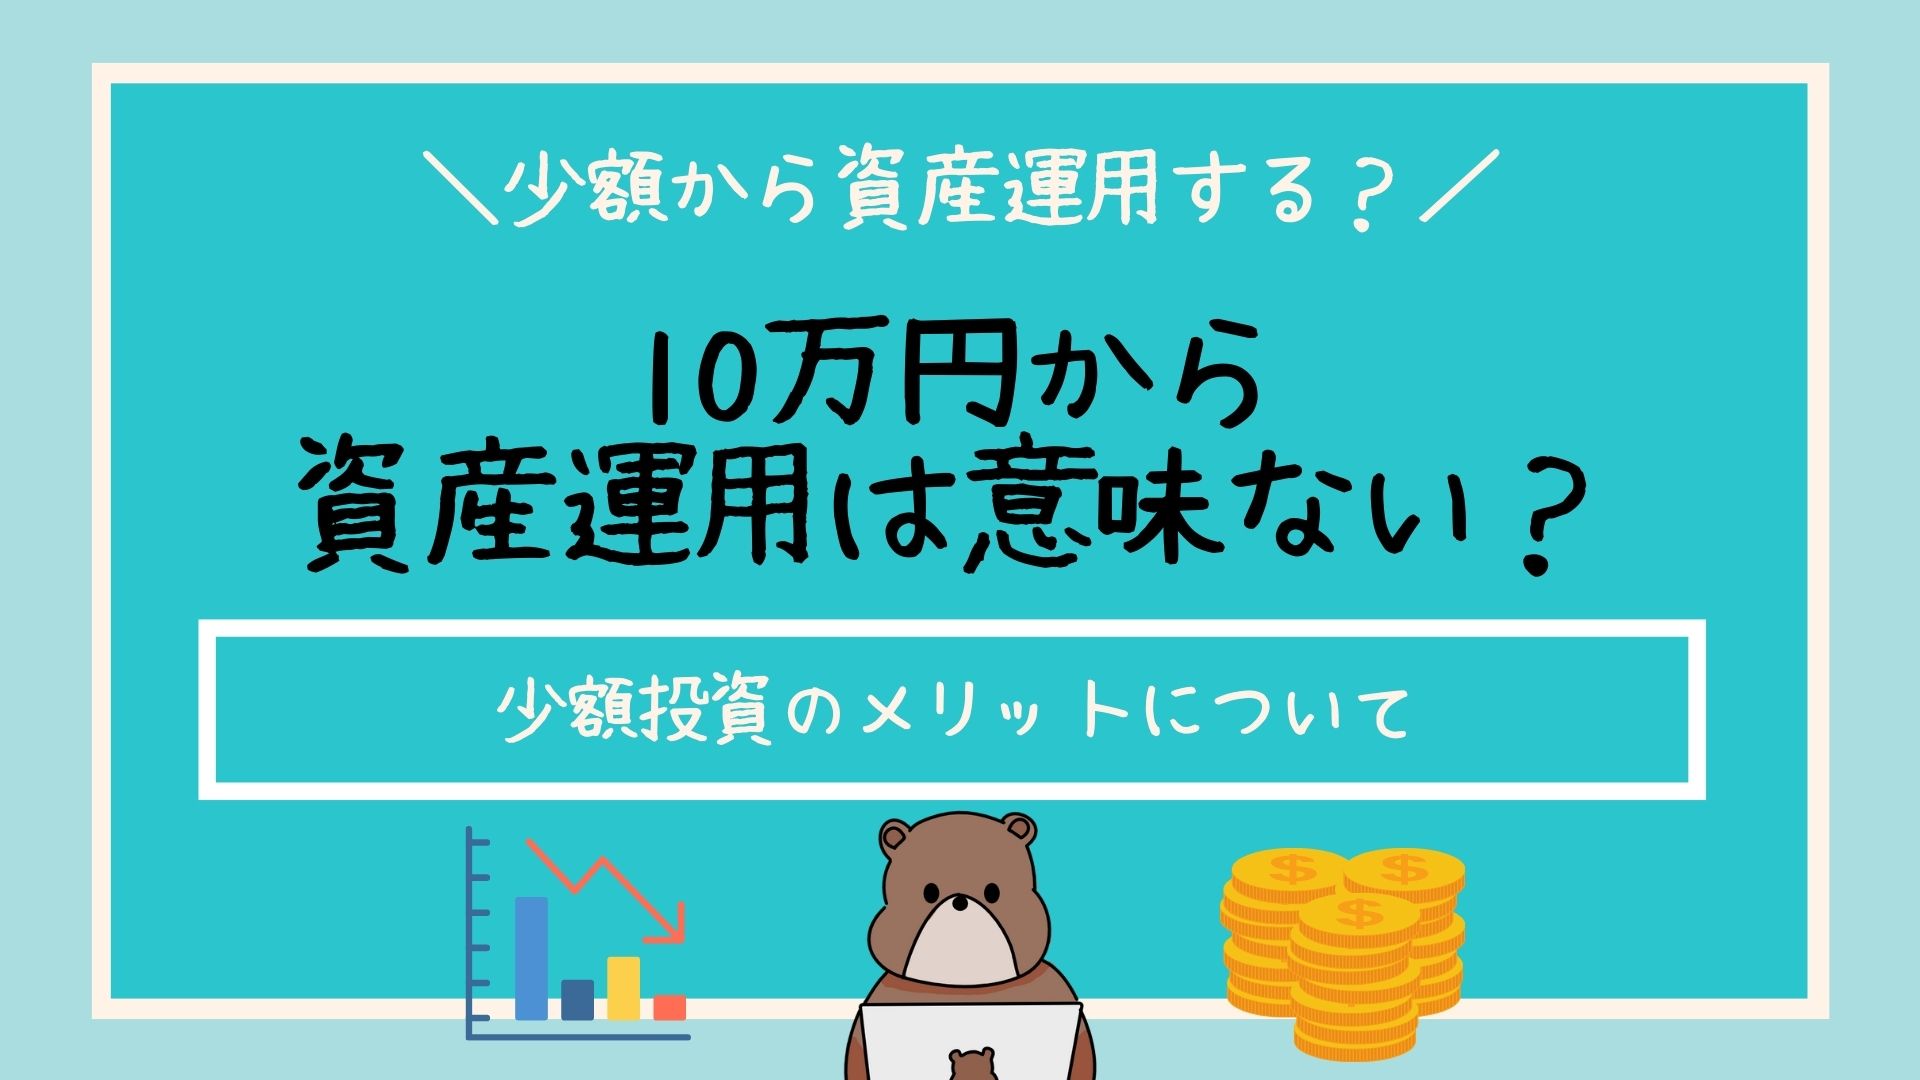 10万円から 資産運用は意味ない？